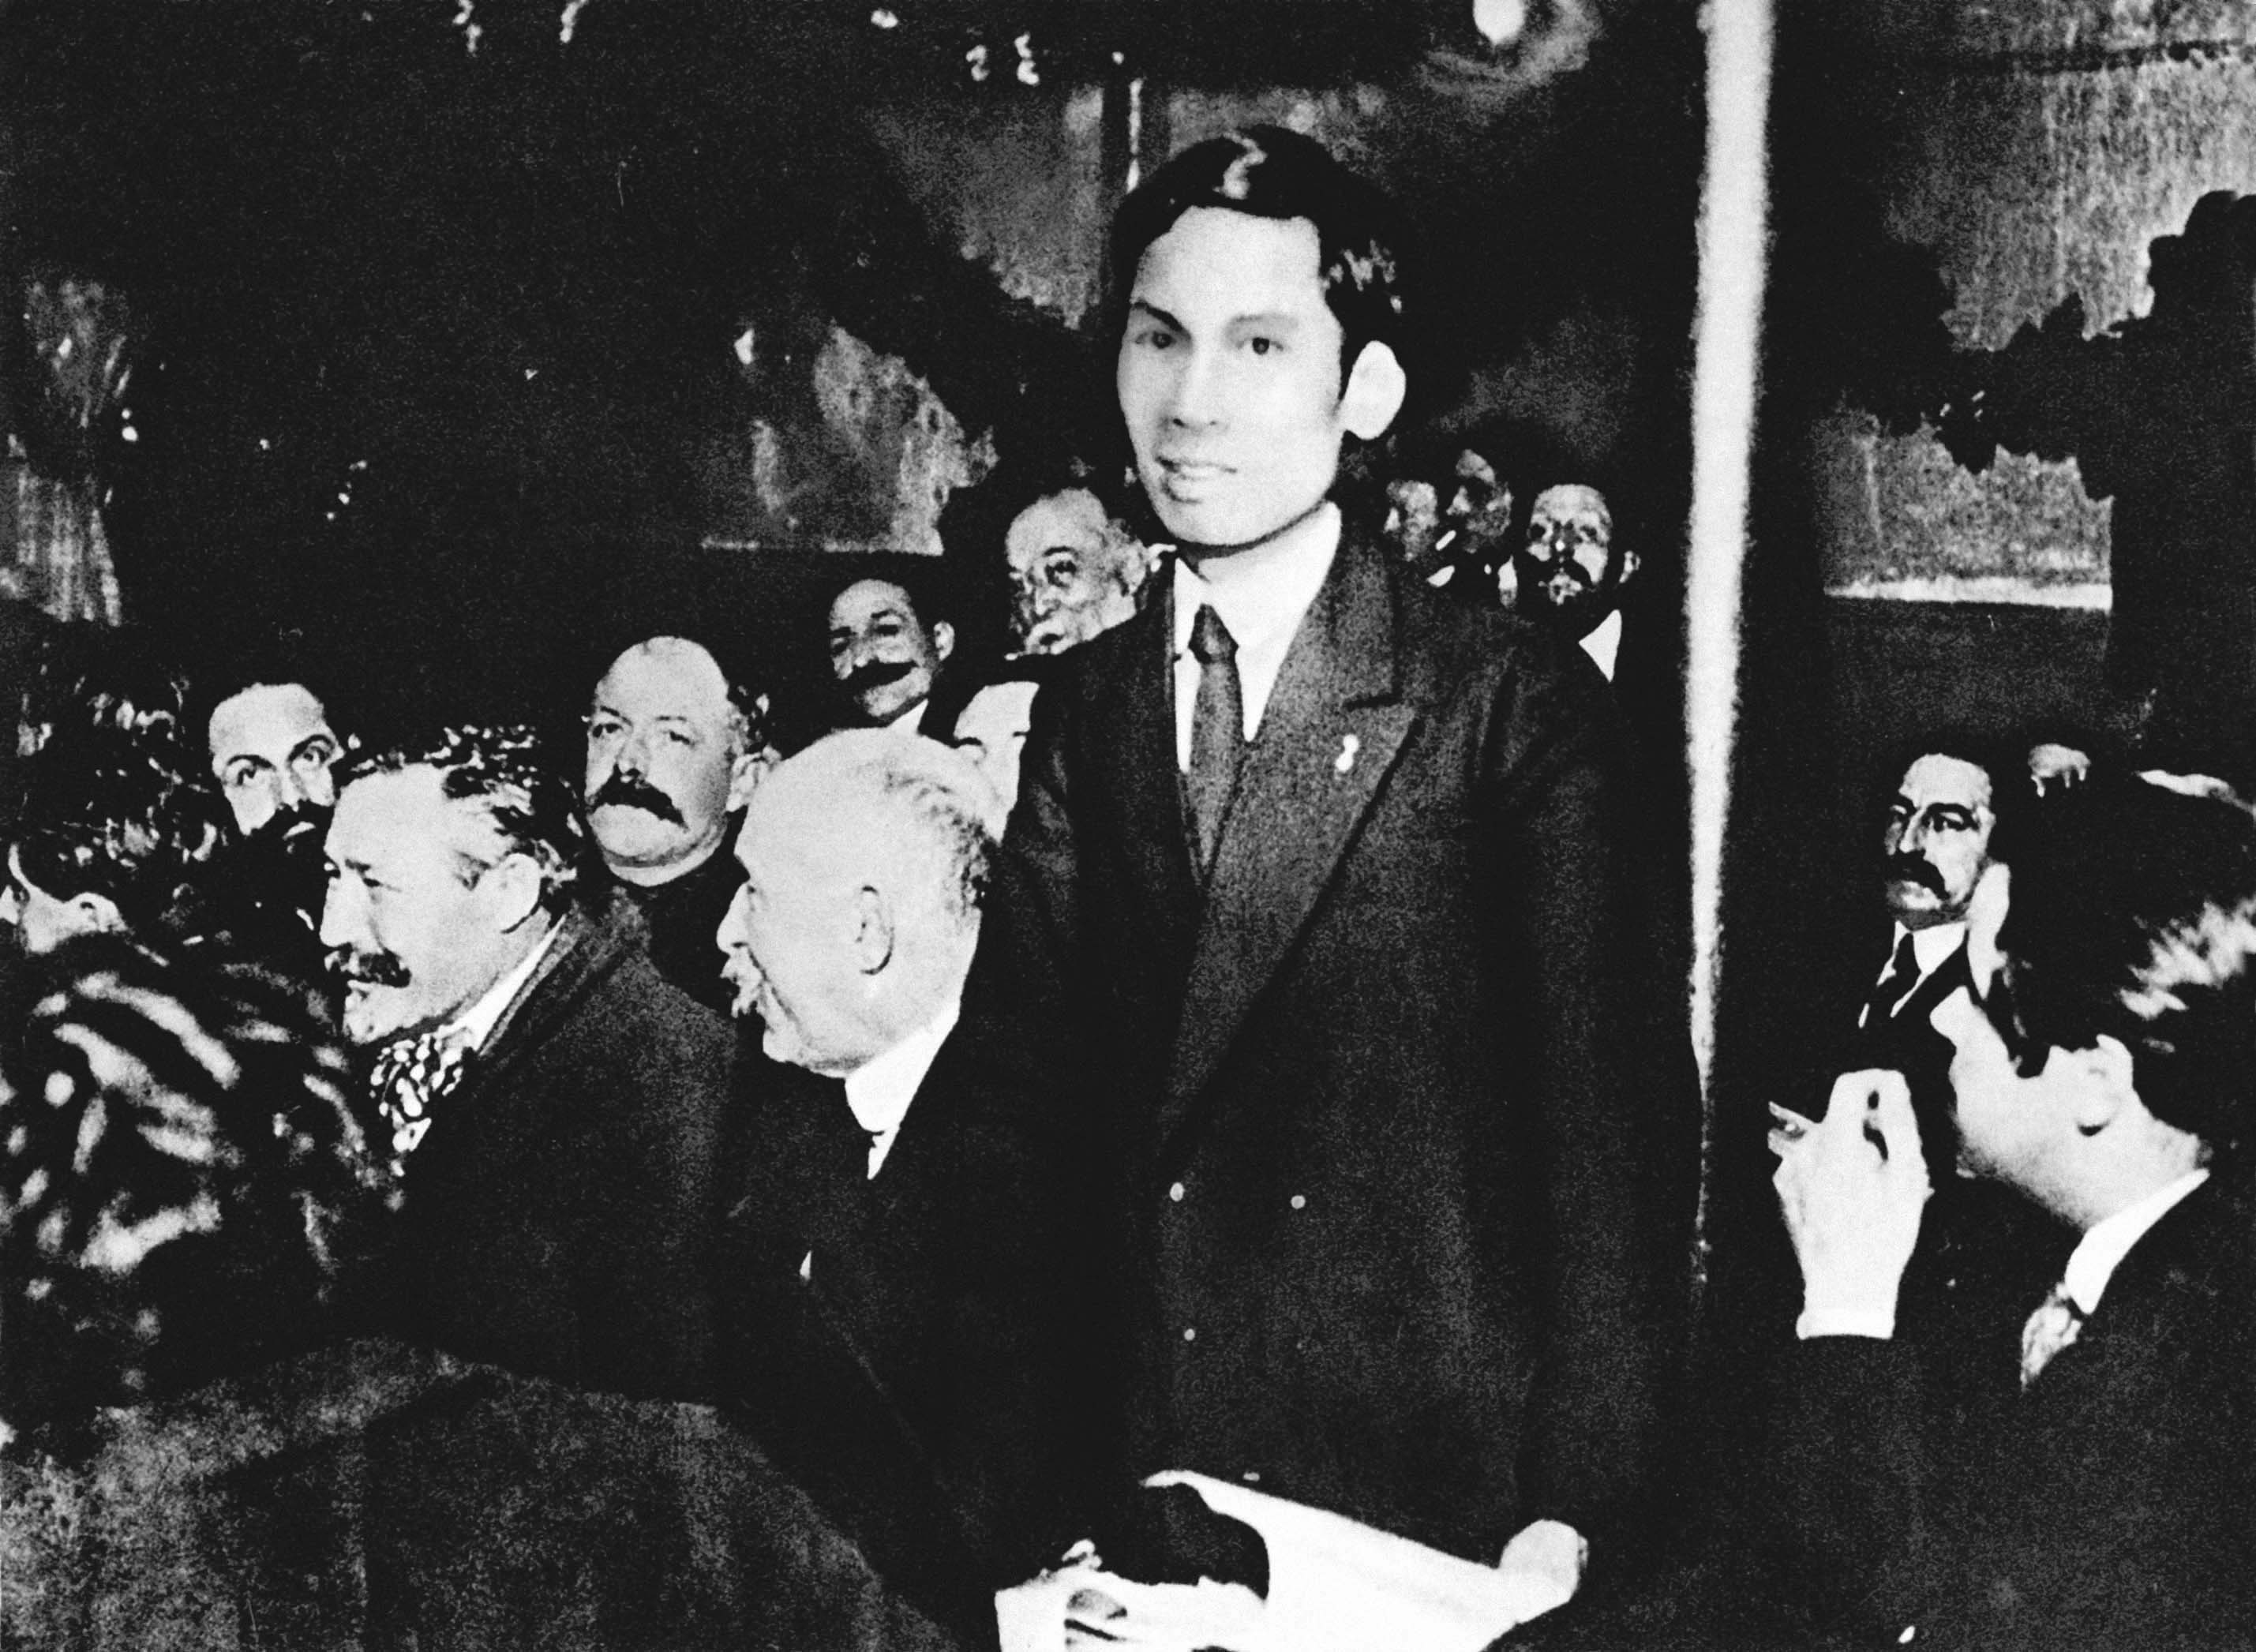 Nguyễn Ái Quốc phát biểu tại Đại hội đại biểu toàn quốc lần thứ 18 Đảng Xã hội Pháp, ủng hộ Luận cương của Lê-nin về vấn đề dân tộc và thuộc địa. Người tham gia sáng lập Đảng Cộng sản Pháp và trở thành người cộng sản Việt Nam đầu tiên (12/1920)